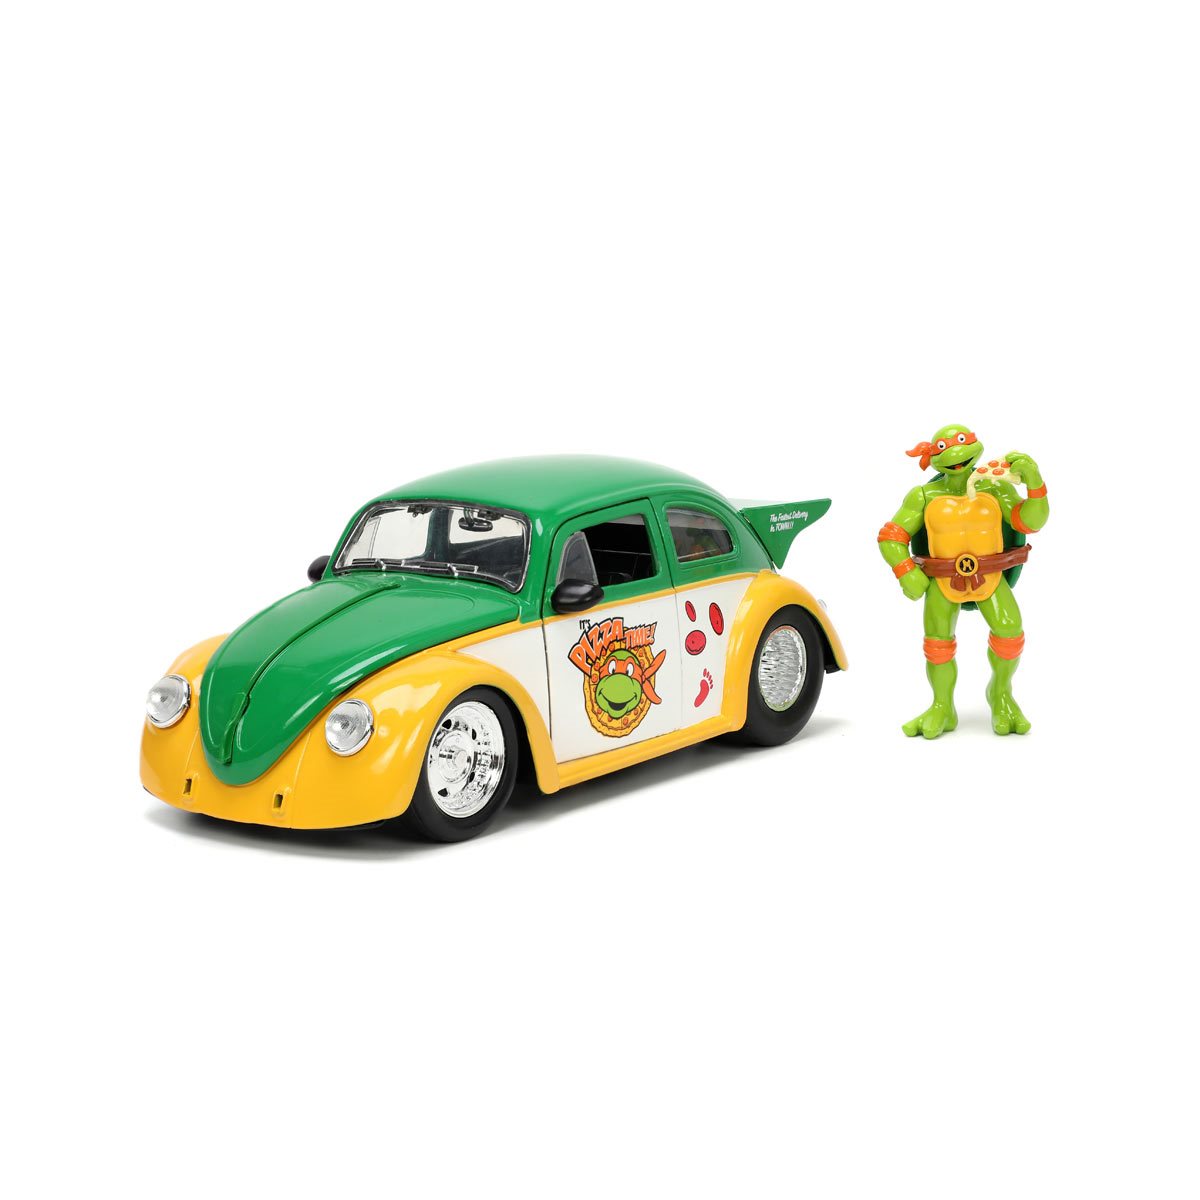 Teenage Mutant Ninja Turtles - Volkswagen Beetle 1:24 Scale Die-Cast Metal Vehicle with Michelangelo Figure